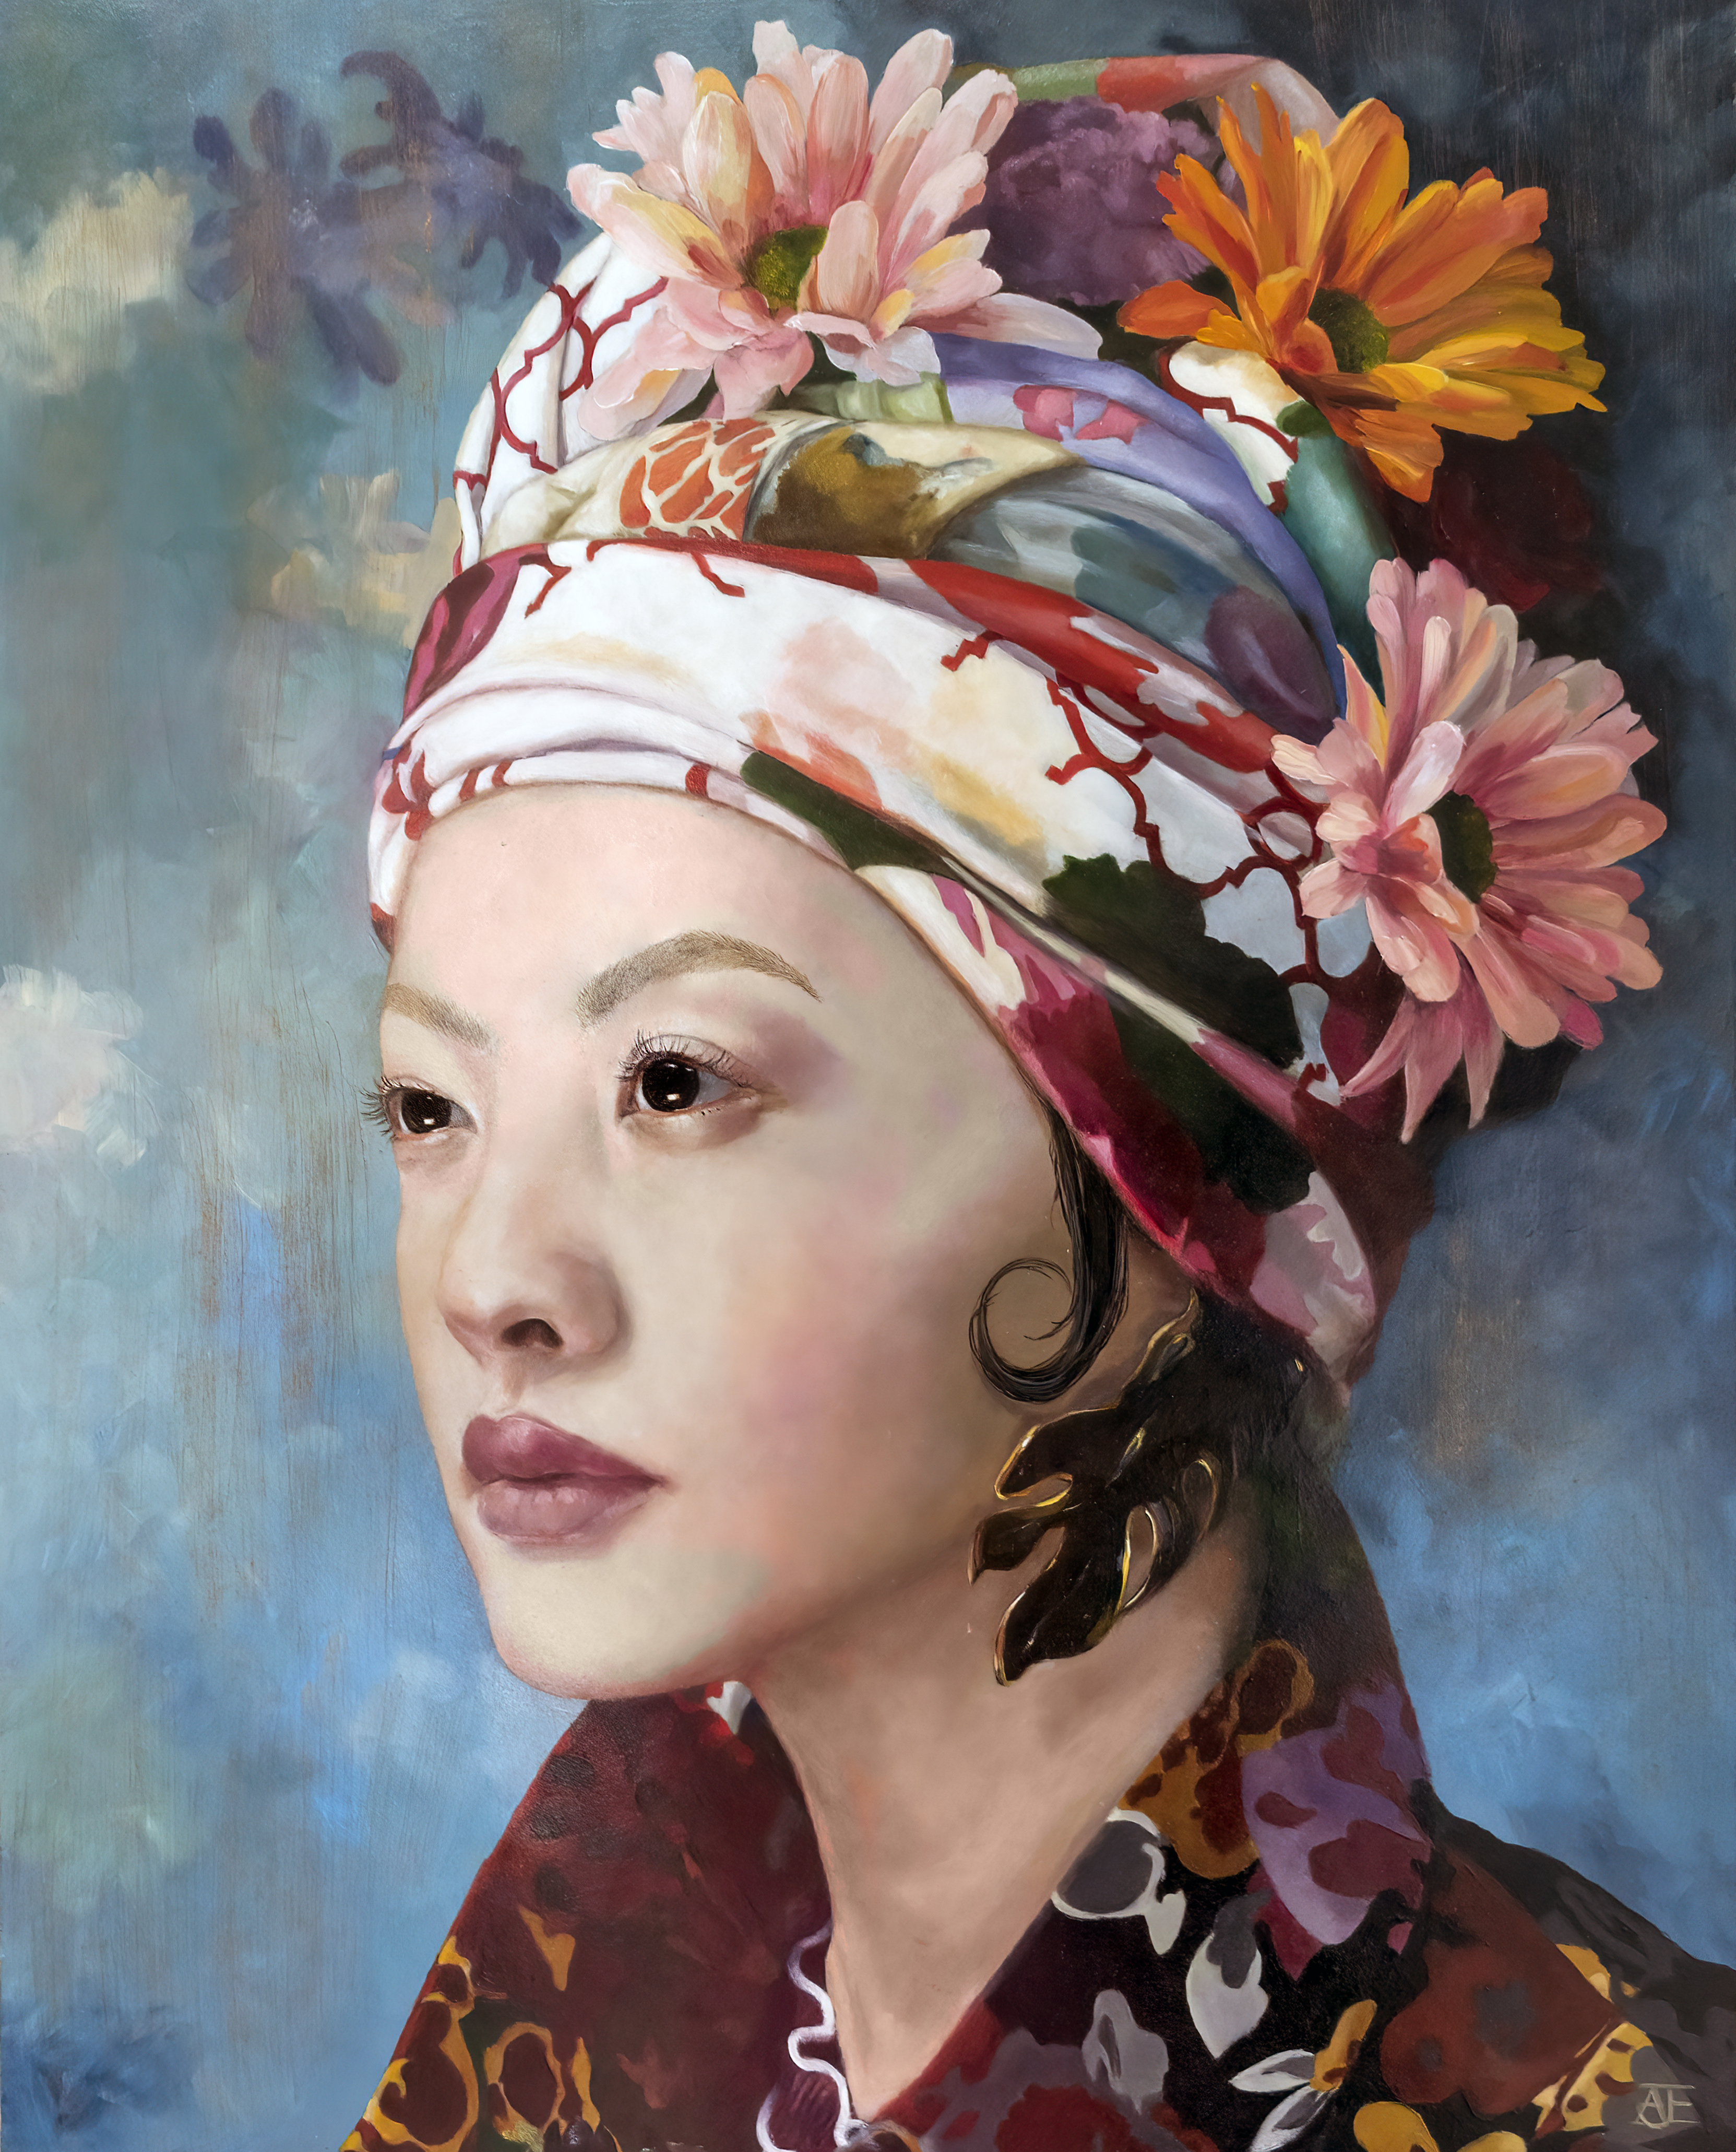 Een olieverfportret op een paneel van 40 x 50 cm, toont een Aziatische vrouw met een bont gekleurde hoofdoek met bloemenmotief tegen een ‘bonte’ achtergrond. Dit vrije kunstwerk is in 2019 geschilderd door kunstenaar Anneke Ensing.